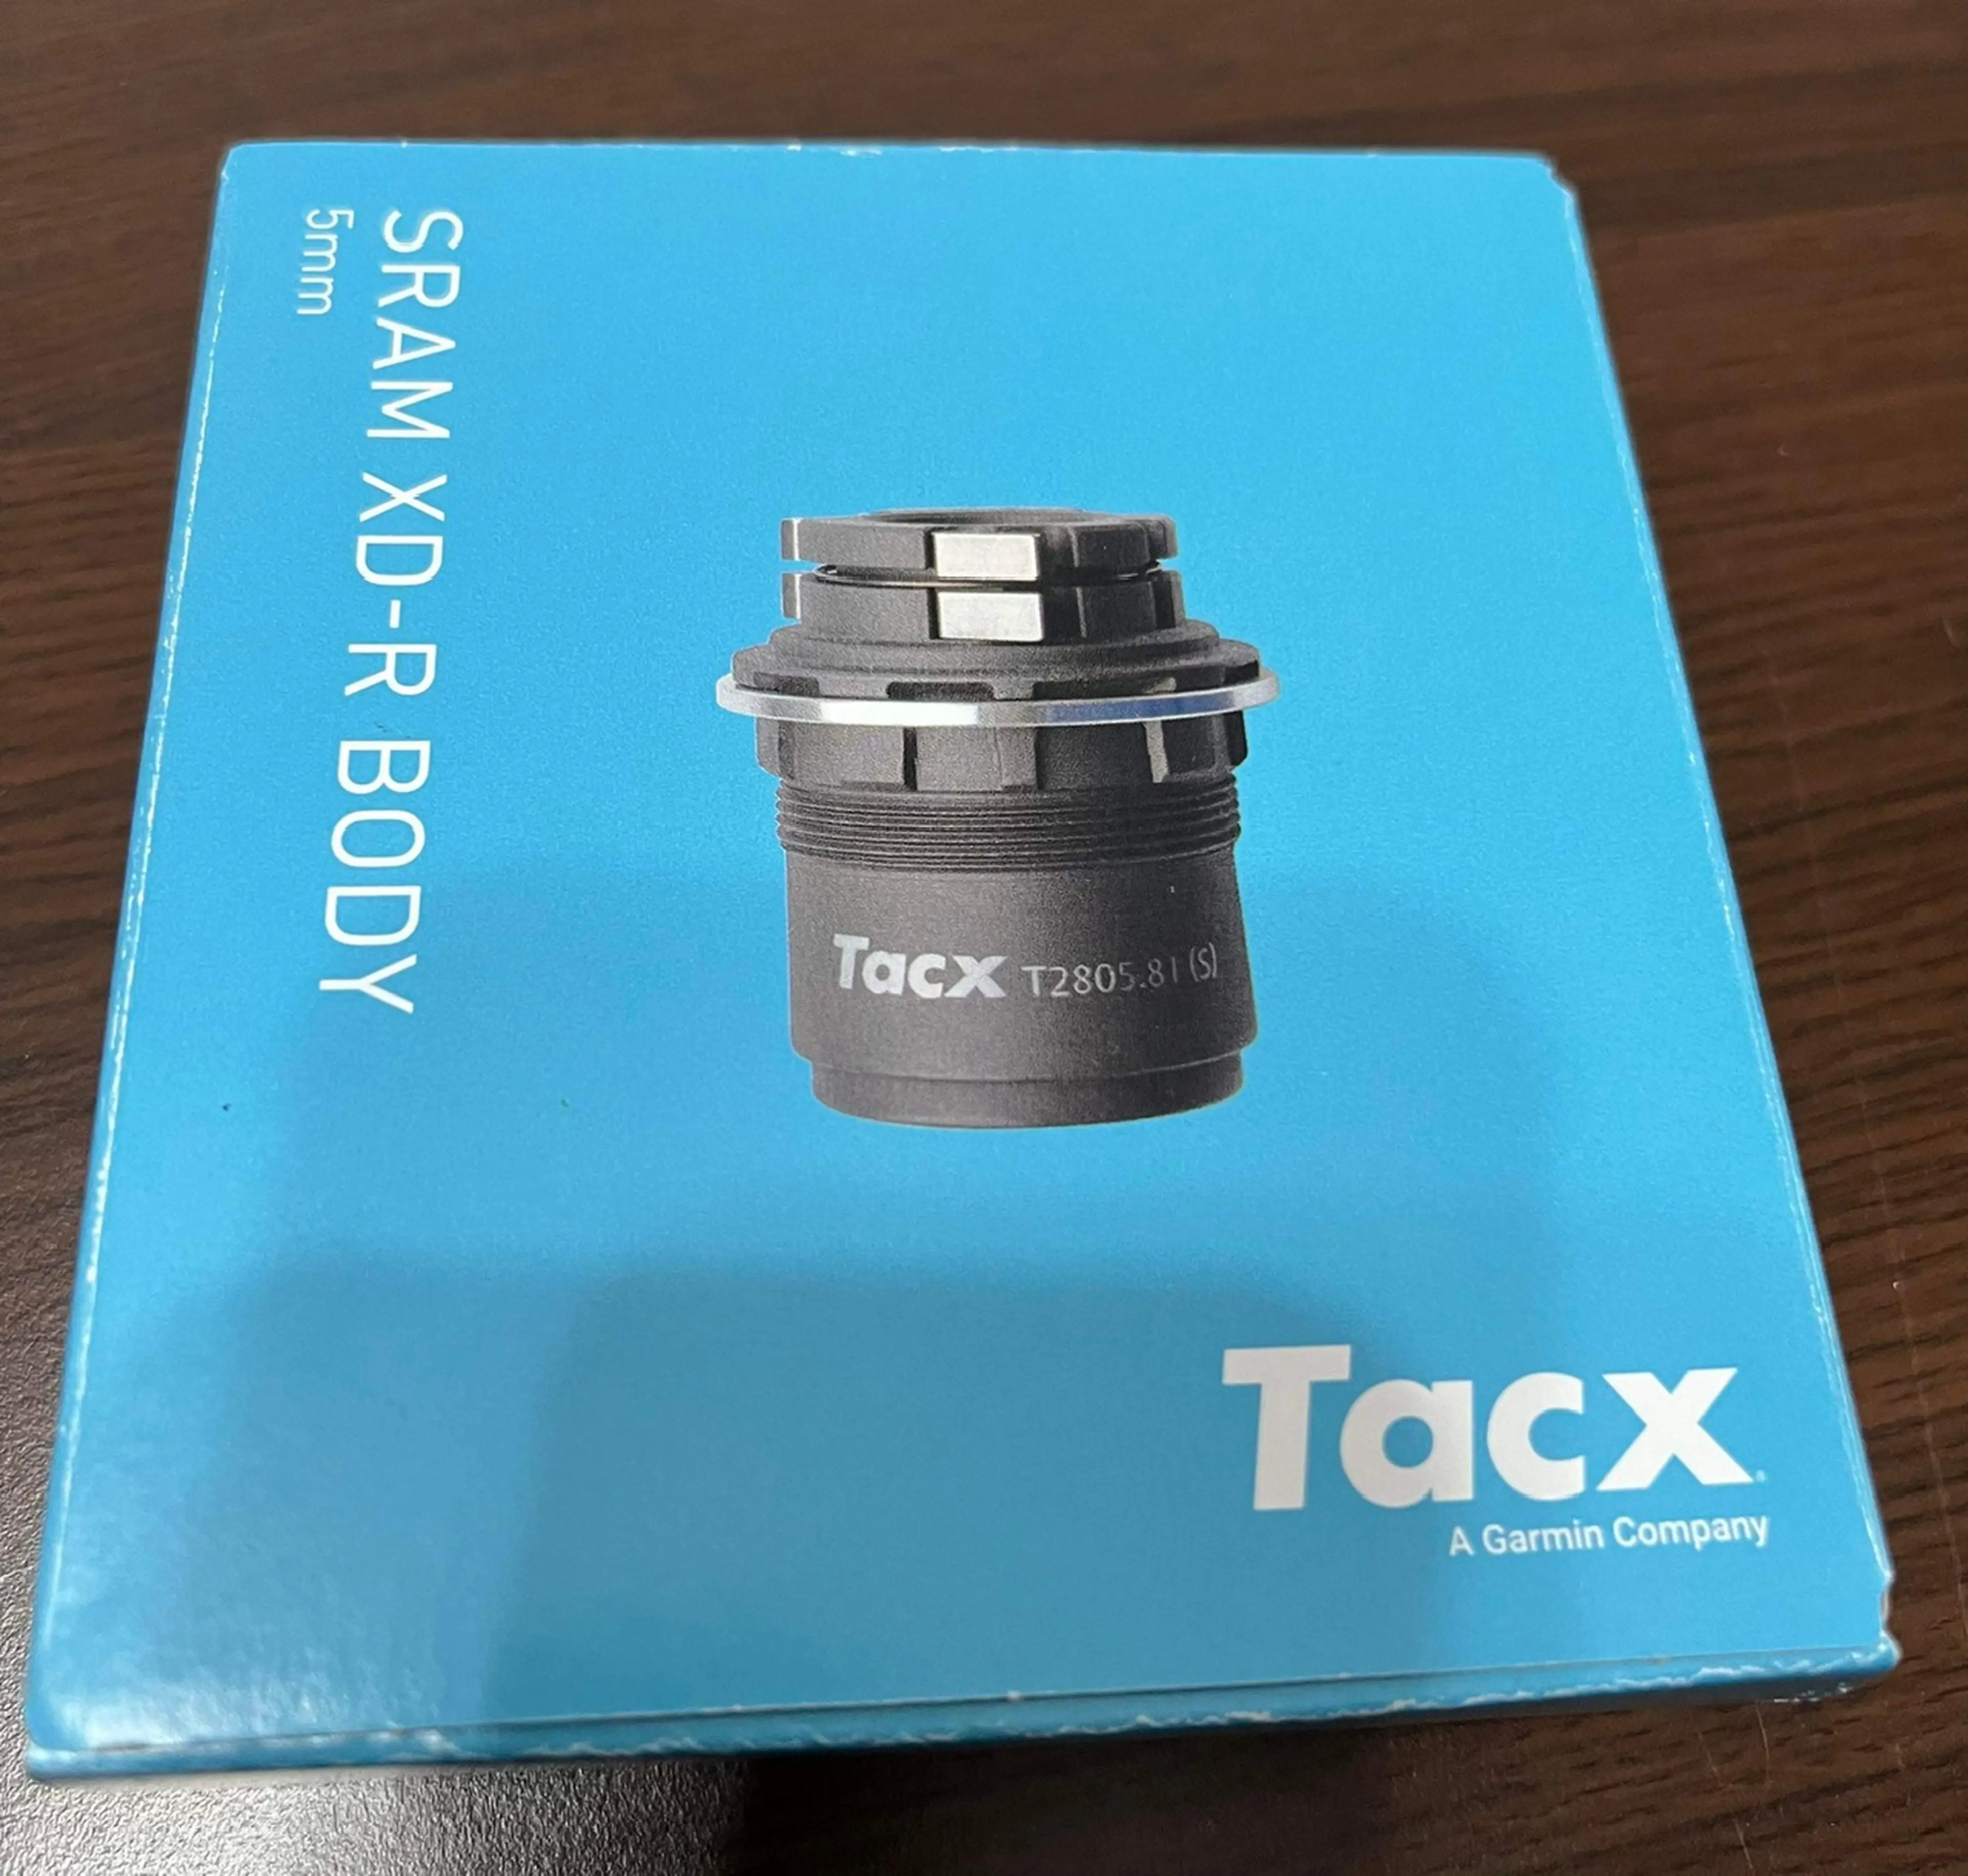 Image Caseta pentru Tacx SRAM XD-R (tip 1) pentru FLUX S/2